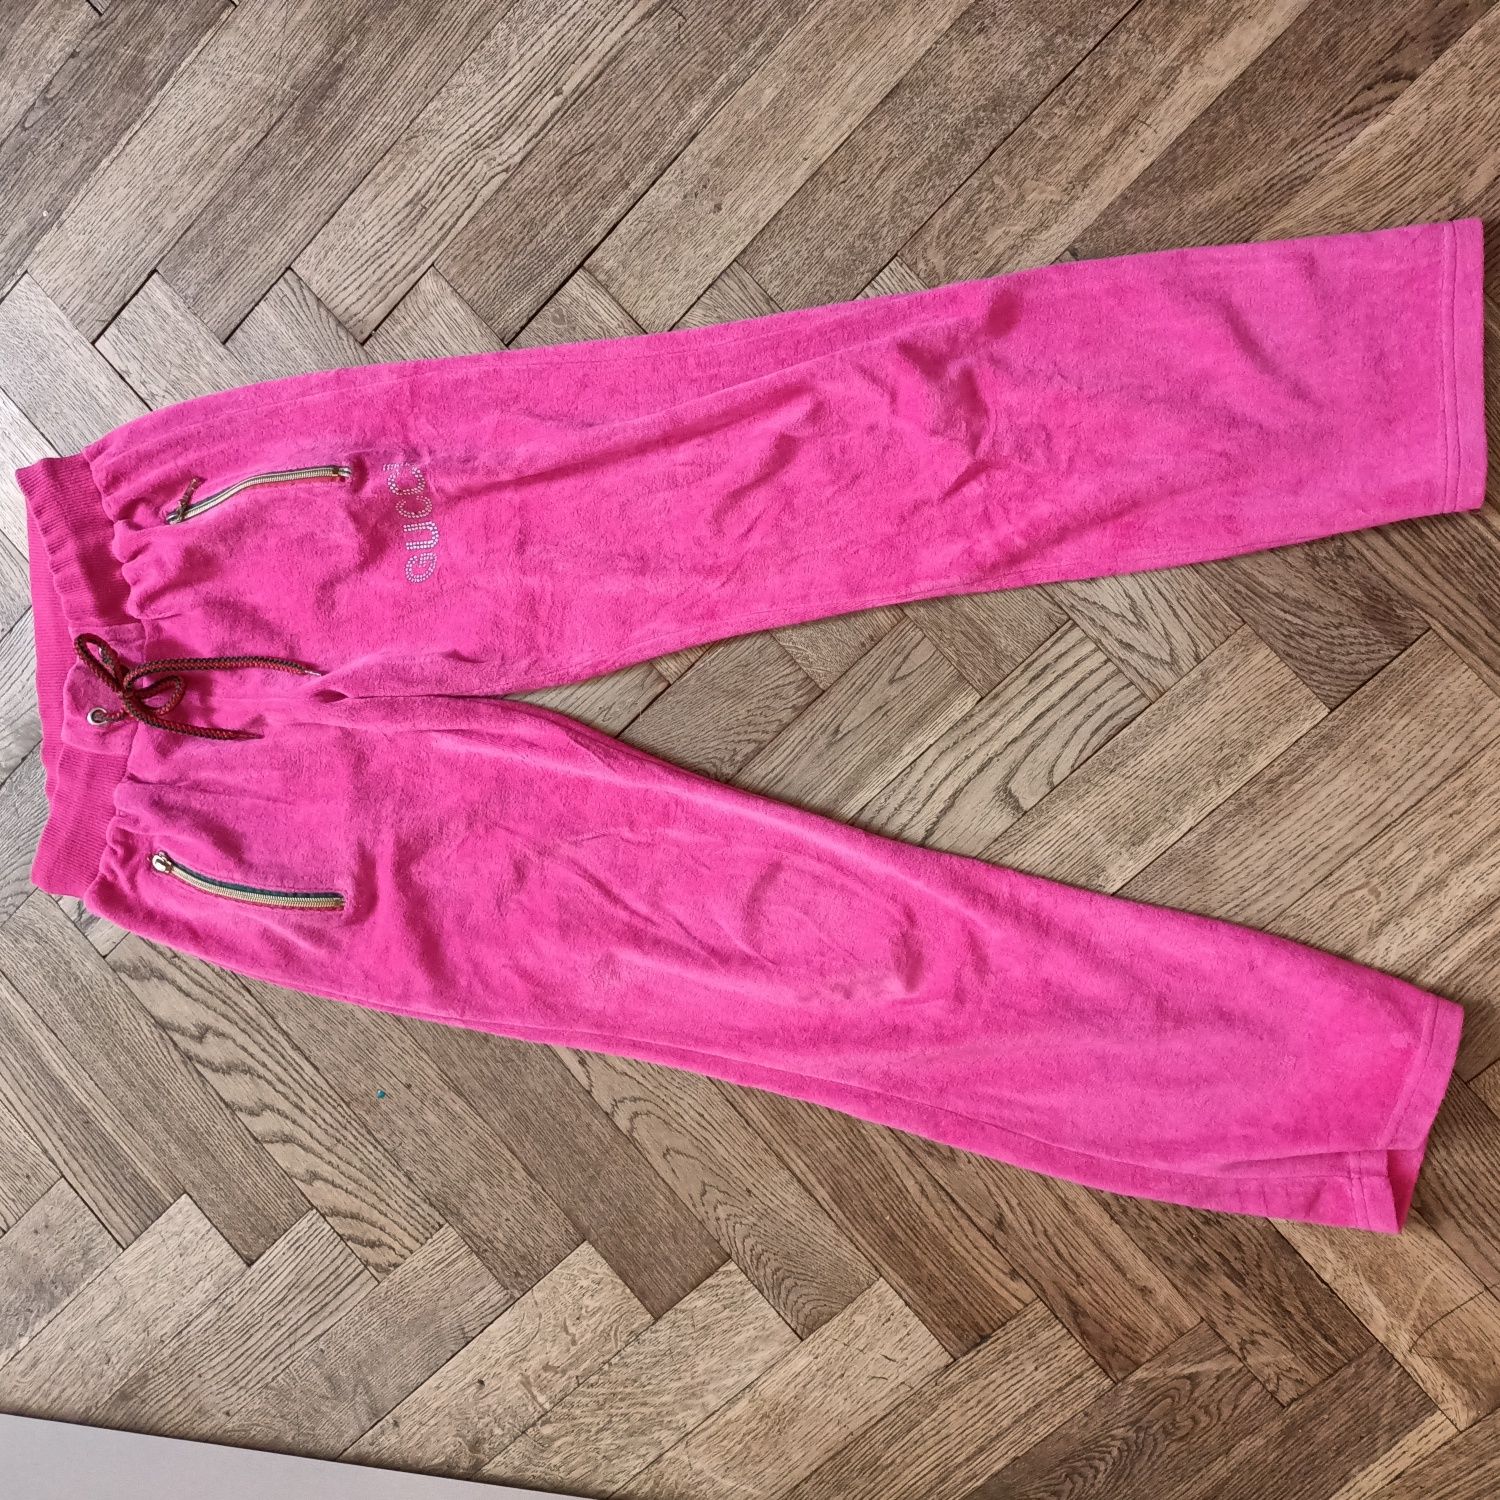 Spodnie dresowe Gucci dresy różowe welurowe damskie sportowe S/M 36/38